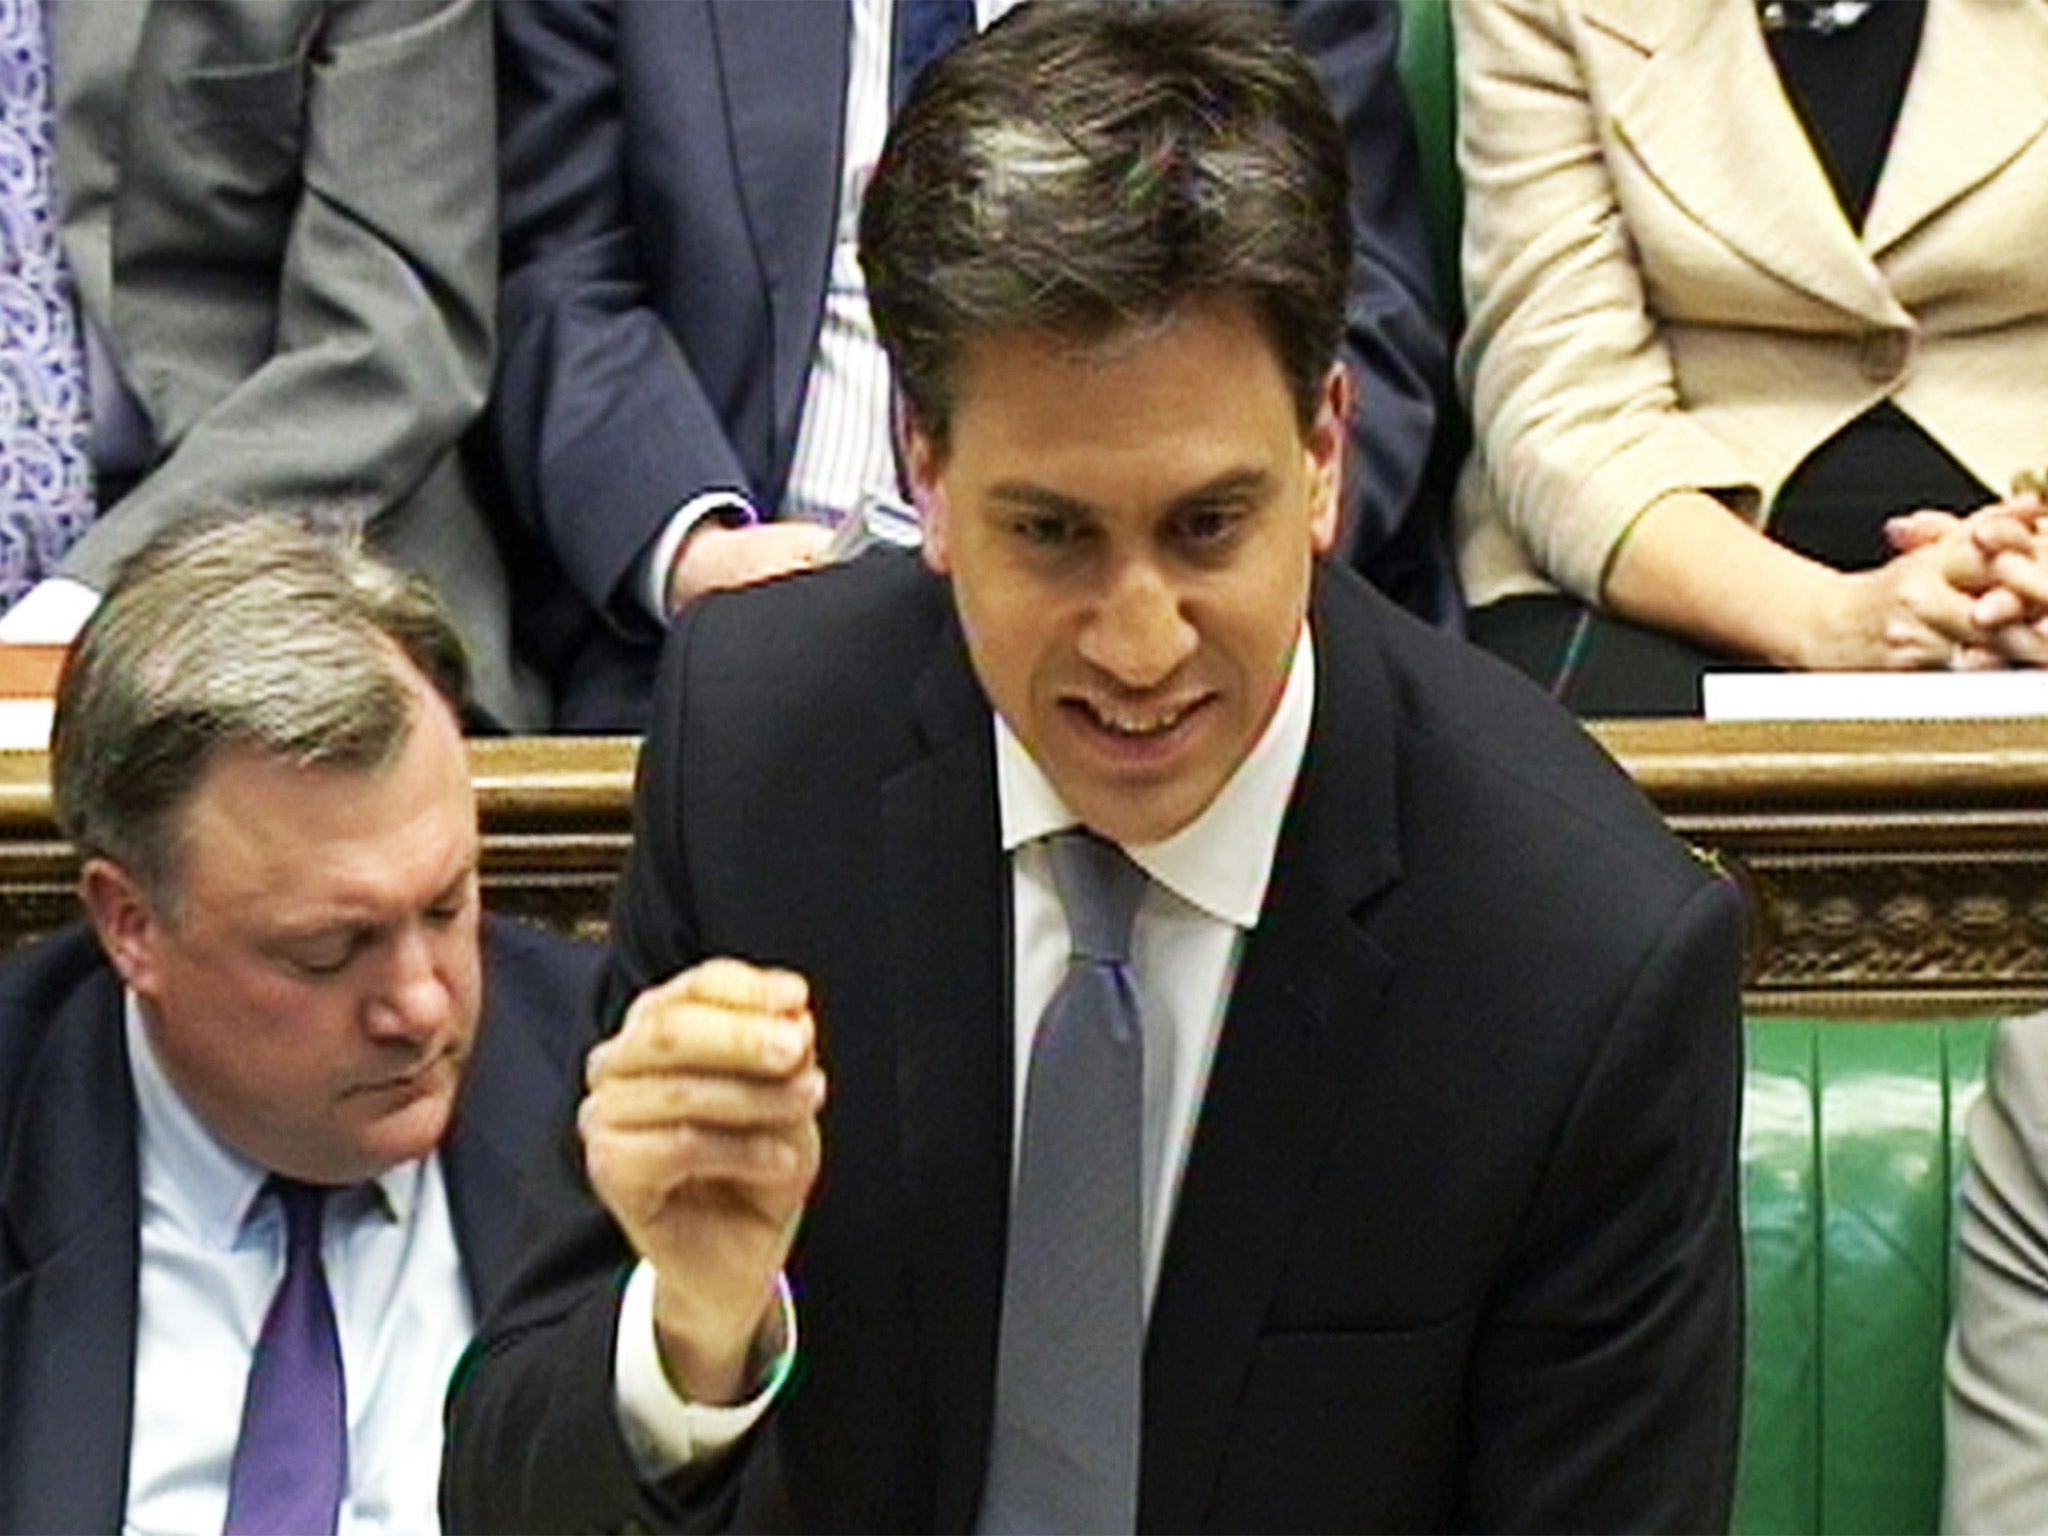 Ed Miliband responds to George Osborne’s Budget